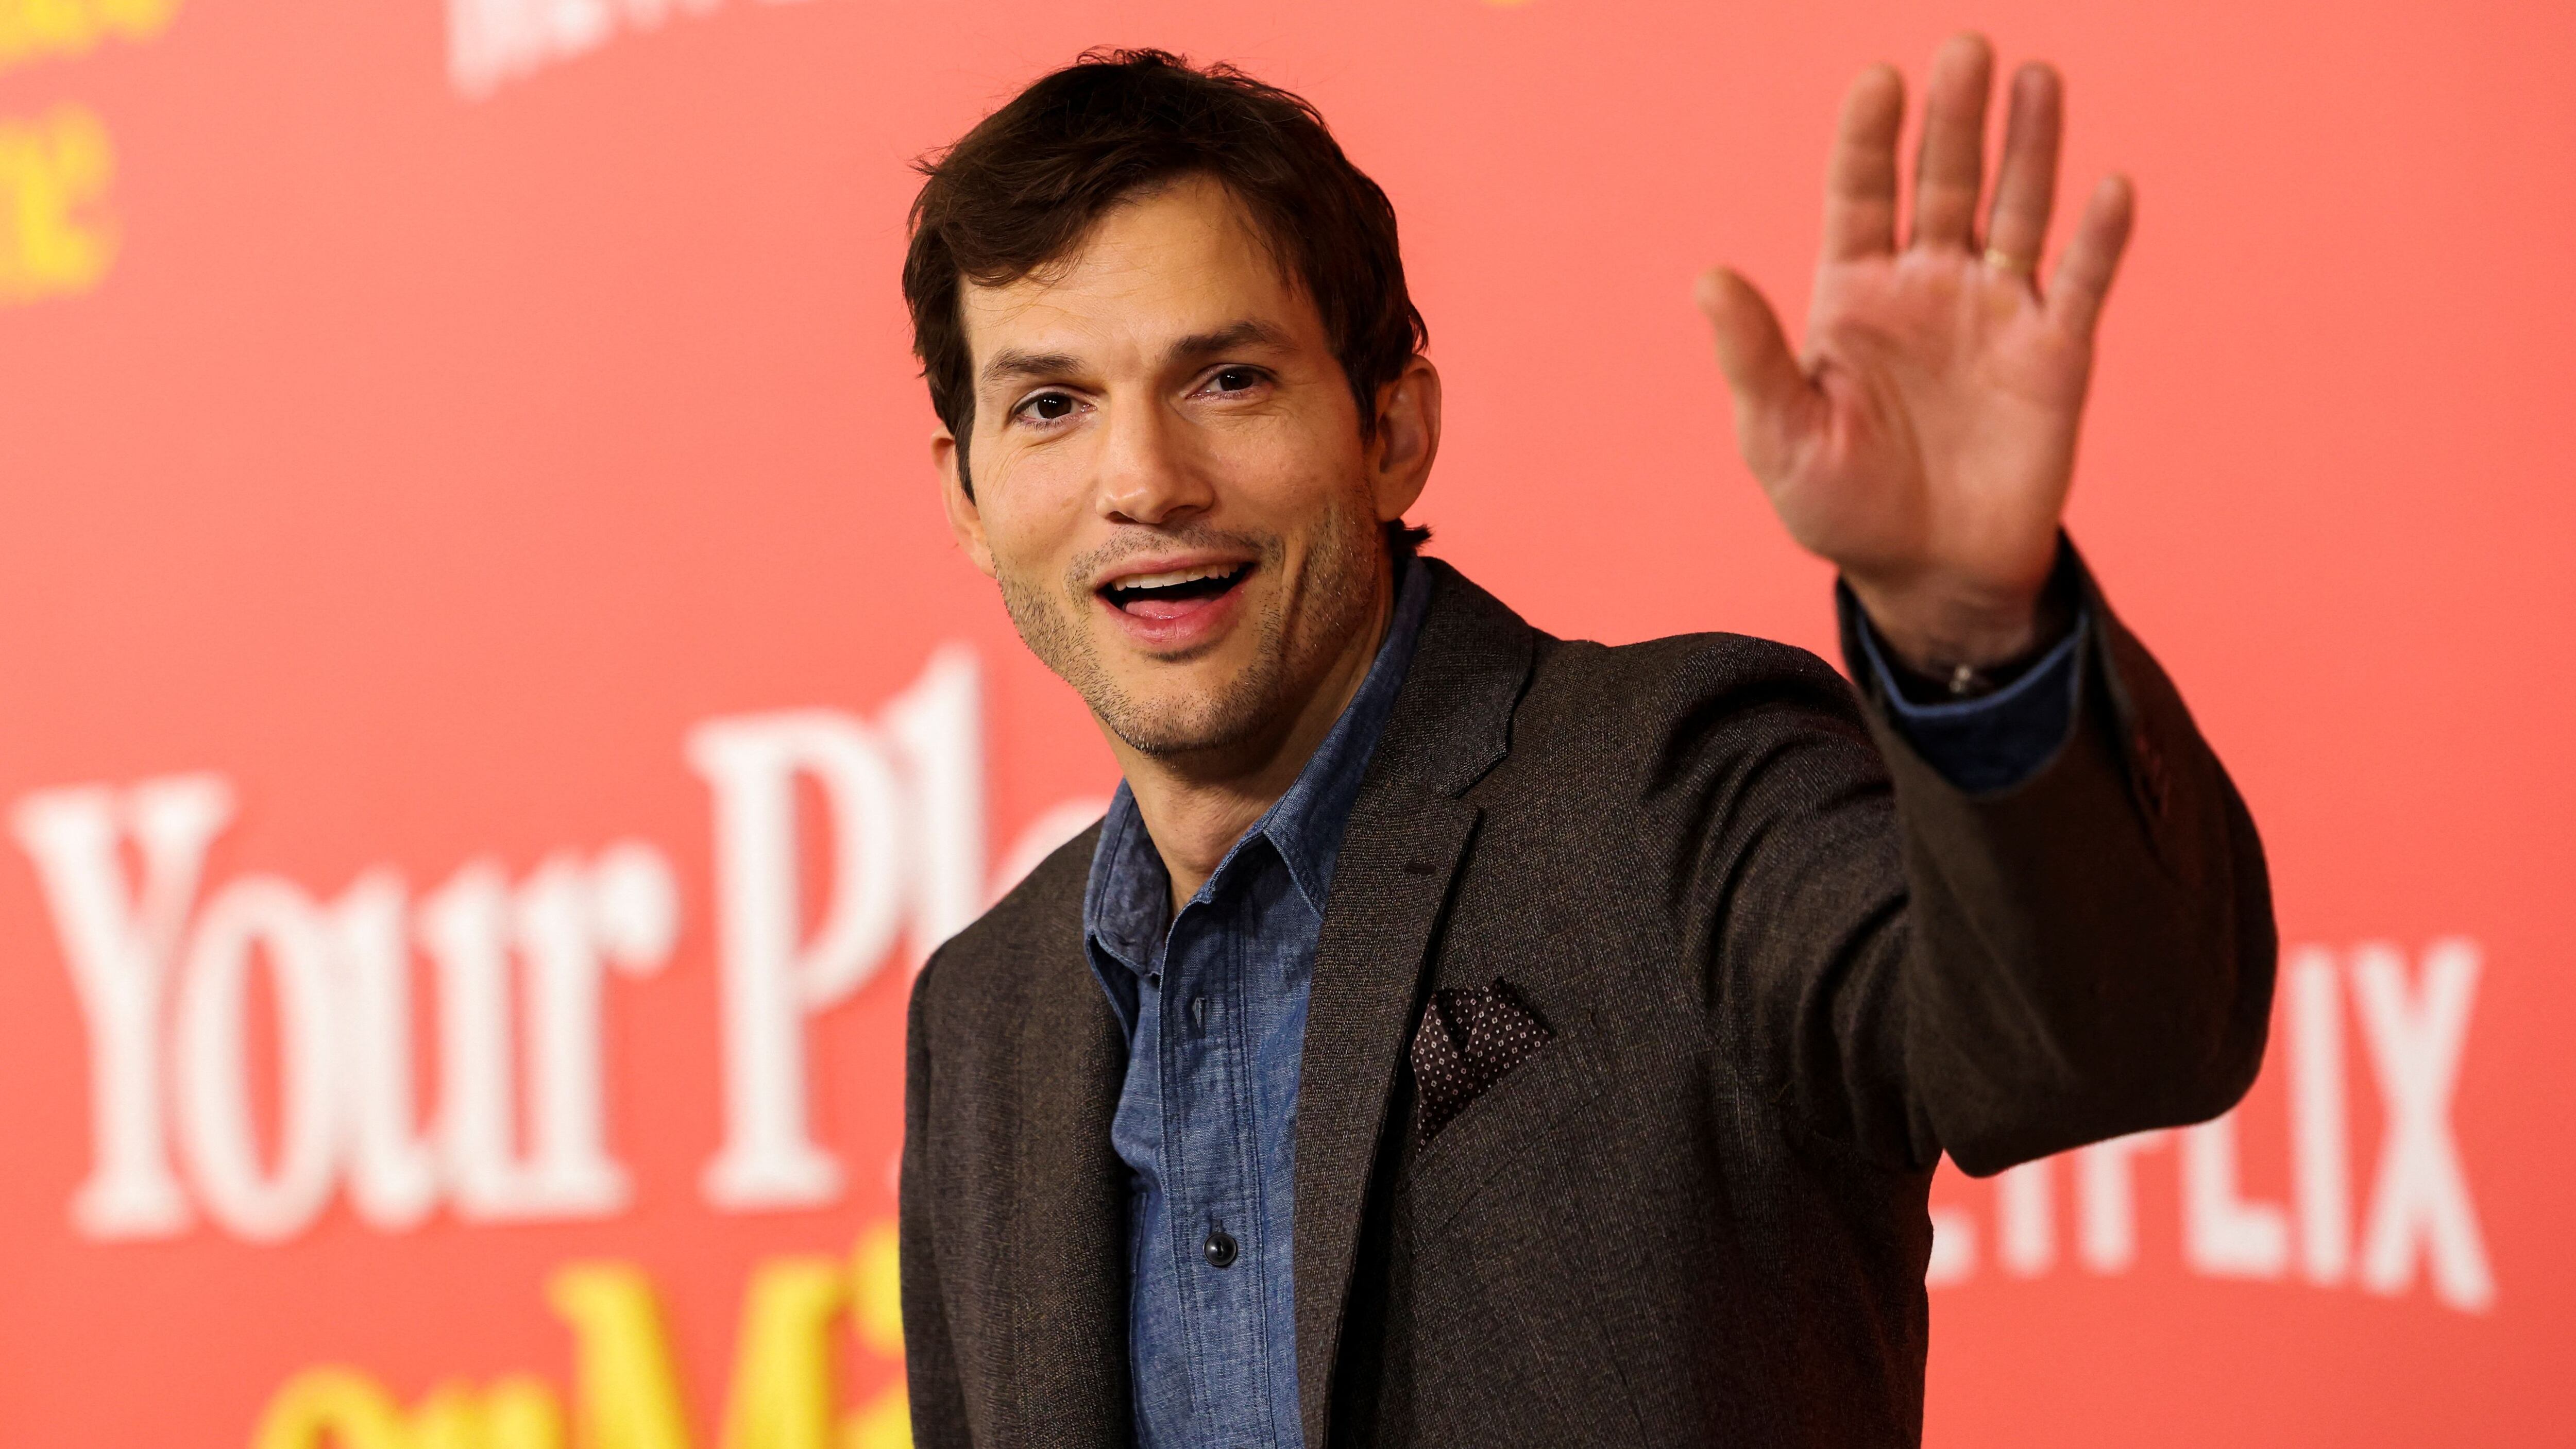 El miembro del reparto Ashton Kutcher asiste al estreno de la película "Your Place or Mine", en Los Ángeles, California, EE.UU. (REUTERS/Mario Anzuoni)